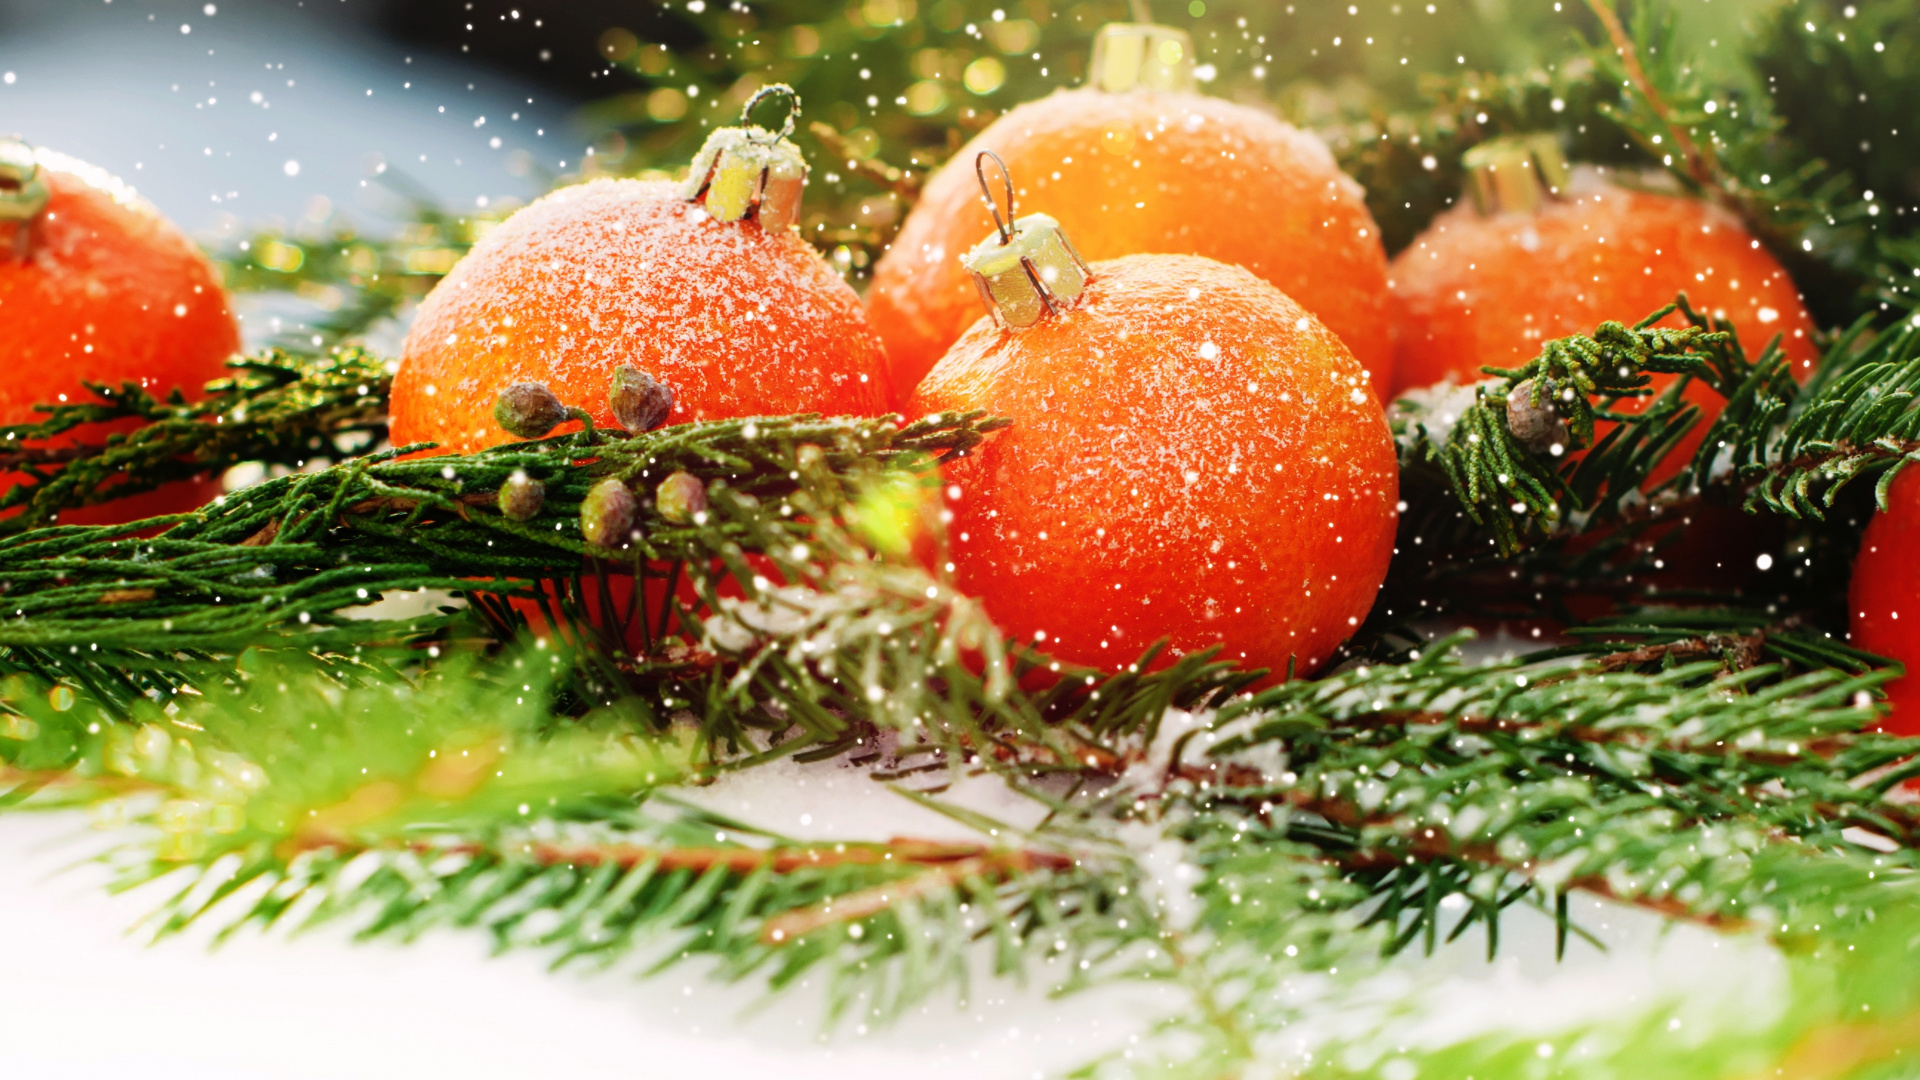 Le Jour De Noël, Nouvelle Année, la Nourriture Végétarienne, Aliment, Fruits. Wallpaper in 1920x1080 Resolution